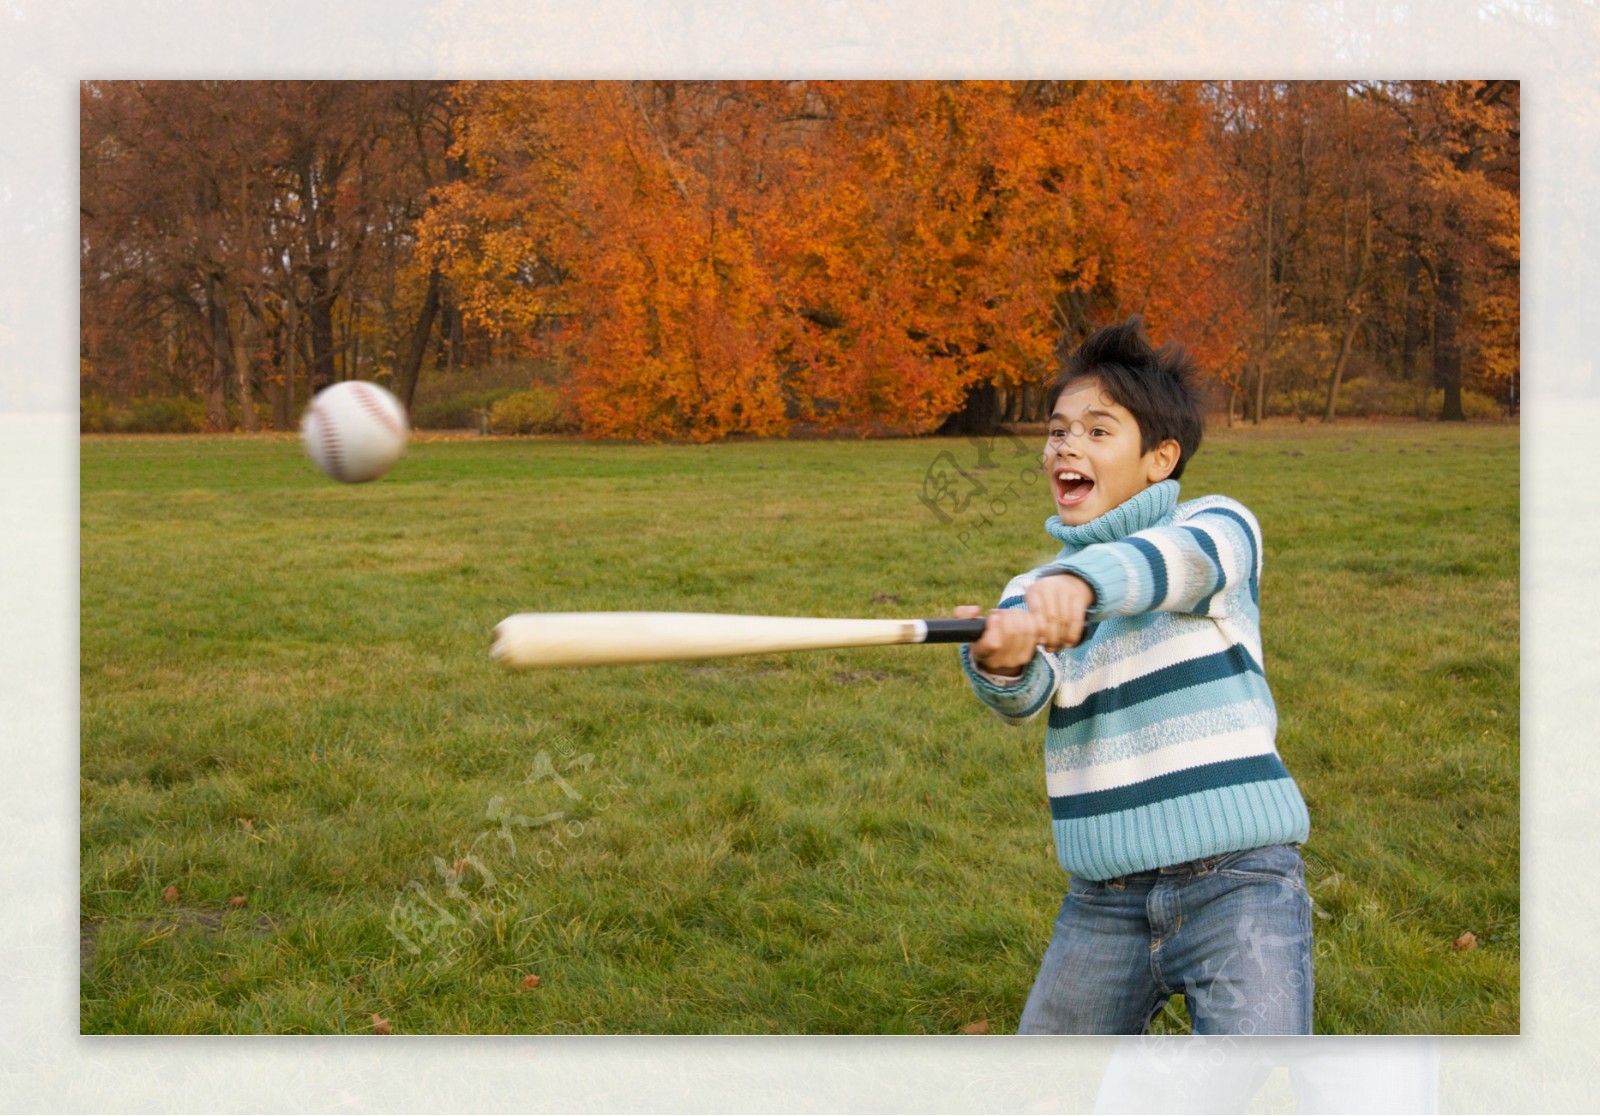 打棒球的男孩图片